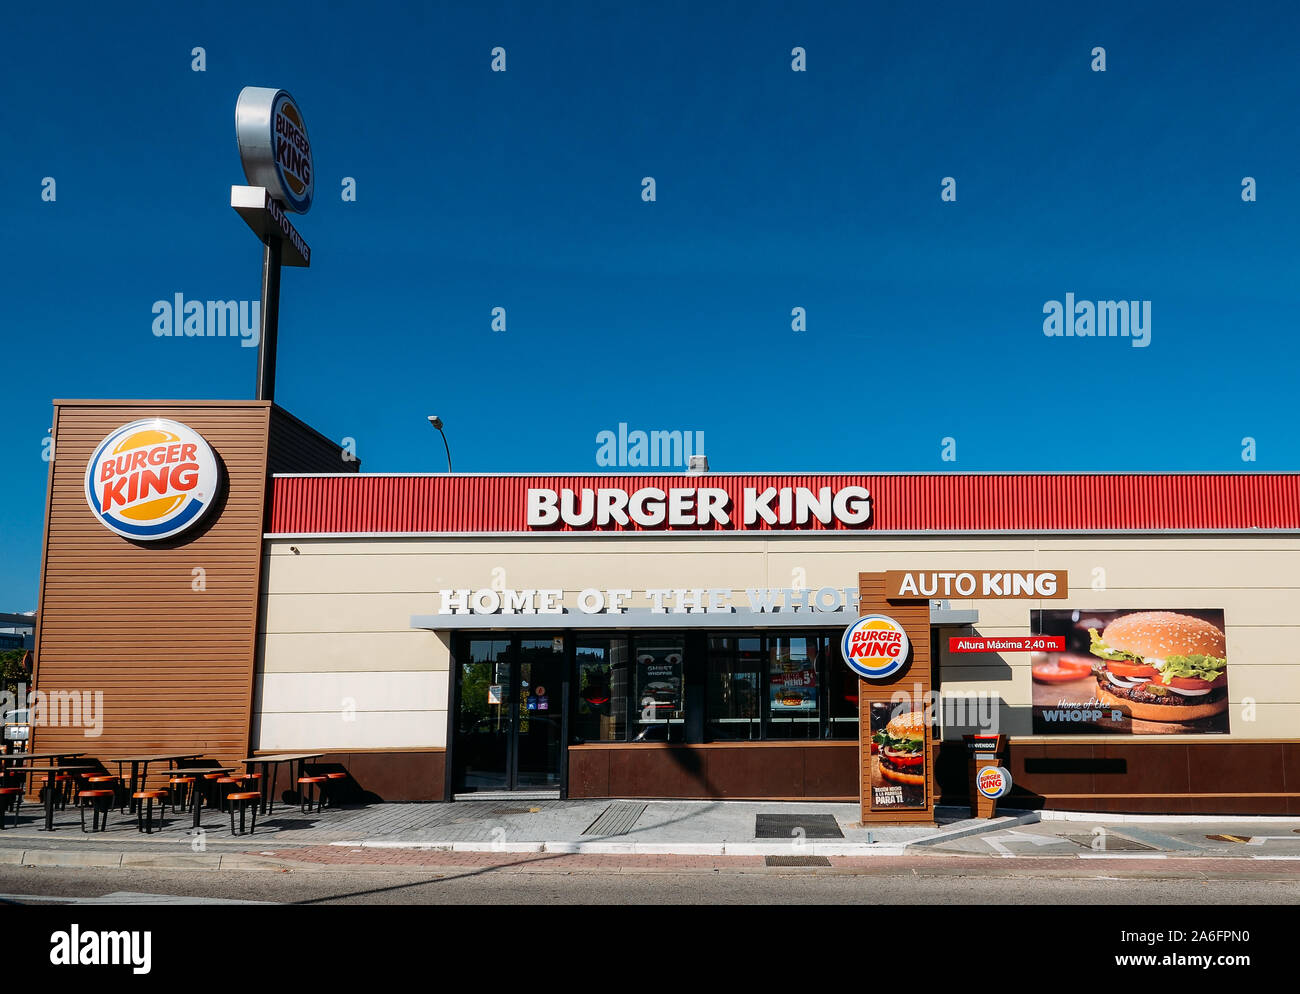 Madrid, Espagne - Oct 26, 2019 : En dehors d'un fast-food restaurant Burger King avec un design futuriste et contemporain comprend un revêtement en brique industrielle rechercher Banque D'Images